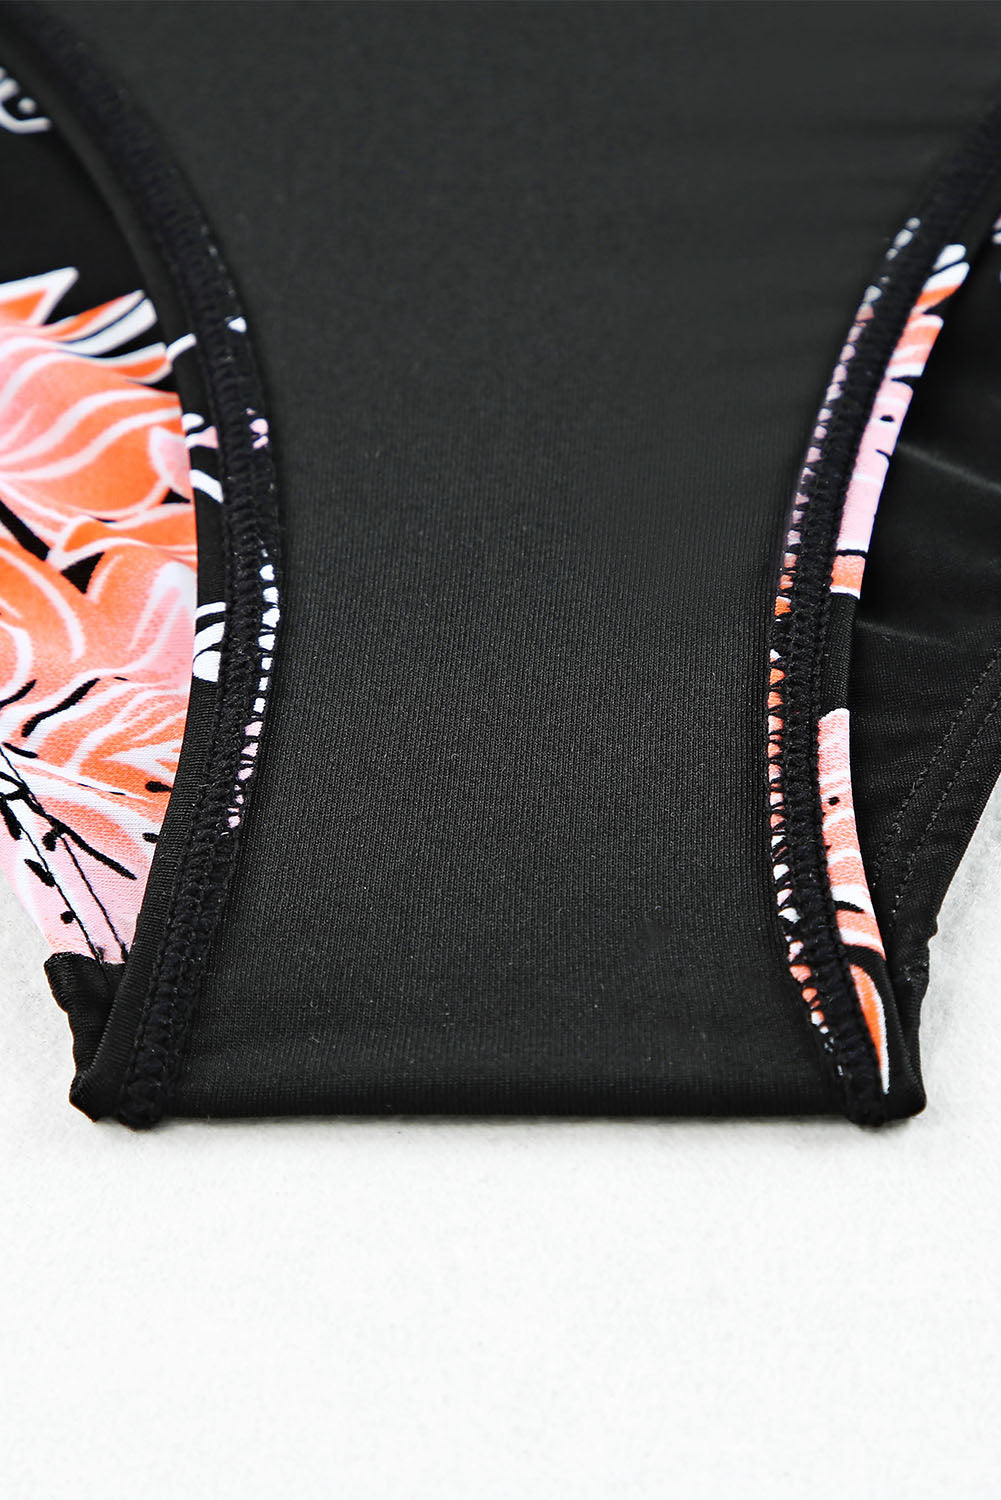 Crni bikini set s rebrastim gornjim dijelom s naborima i printom